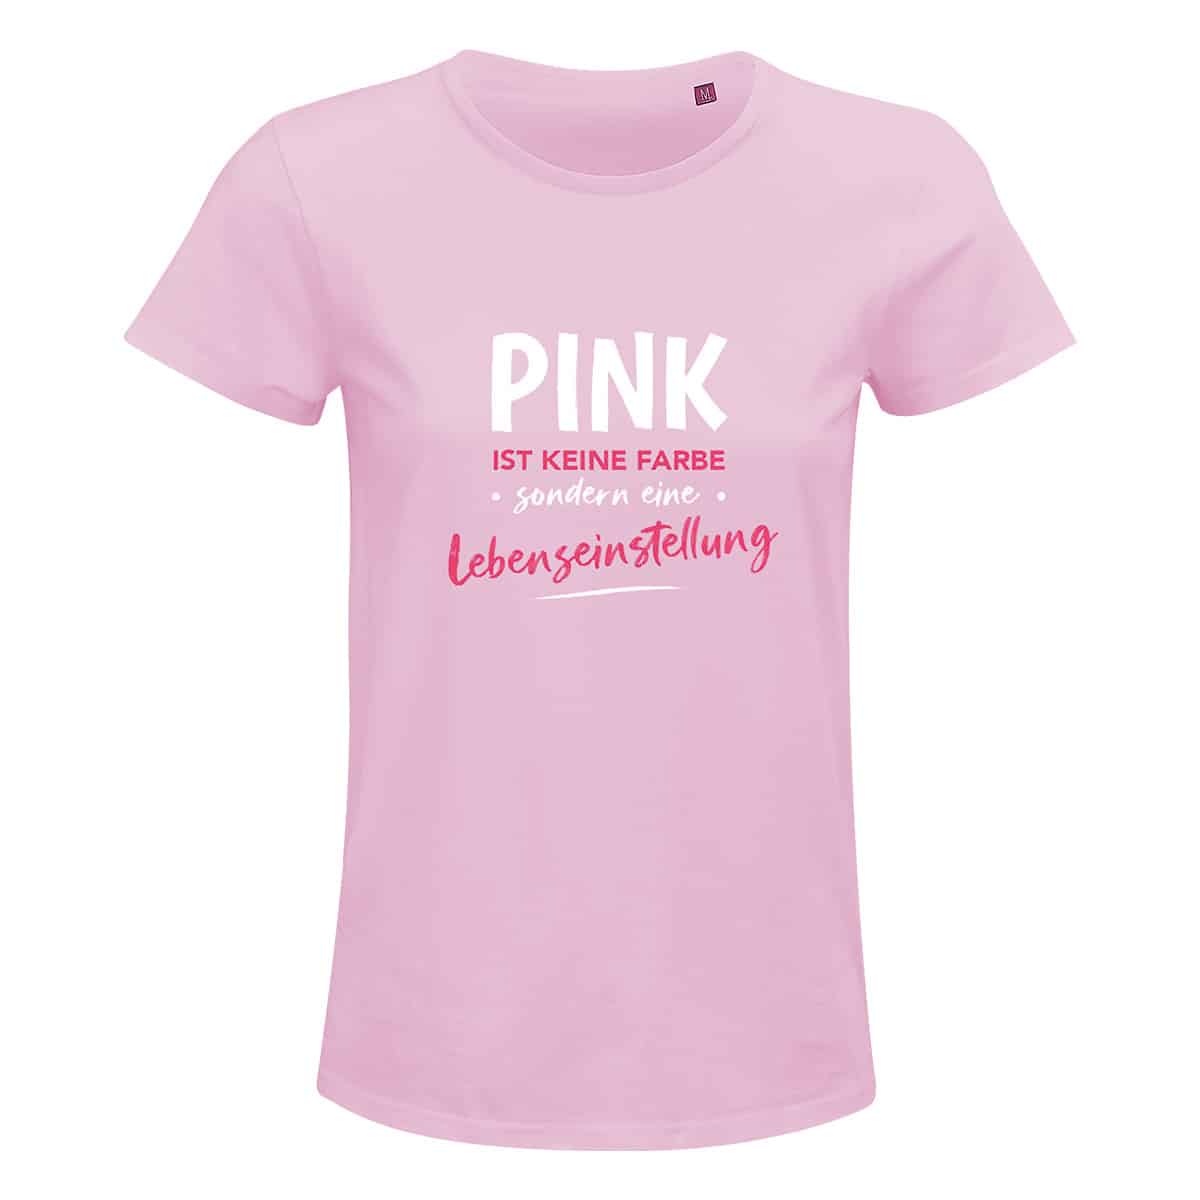 DK Shirt Pink